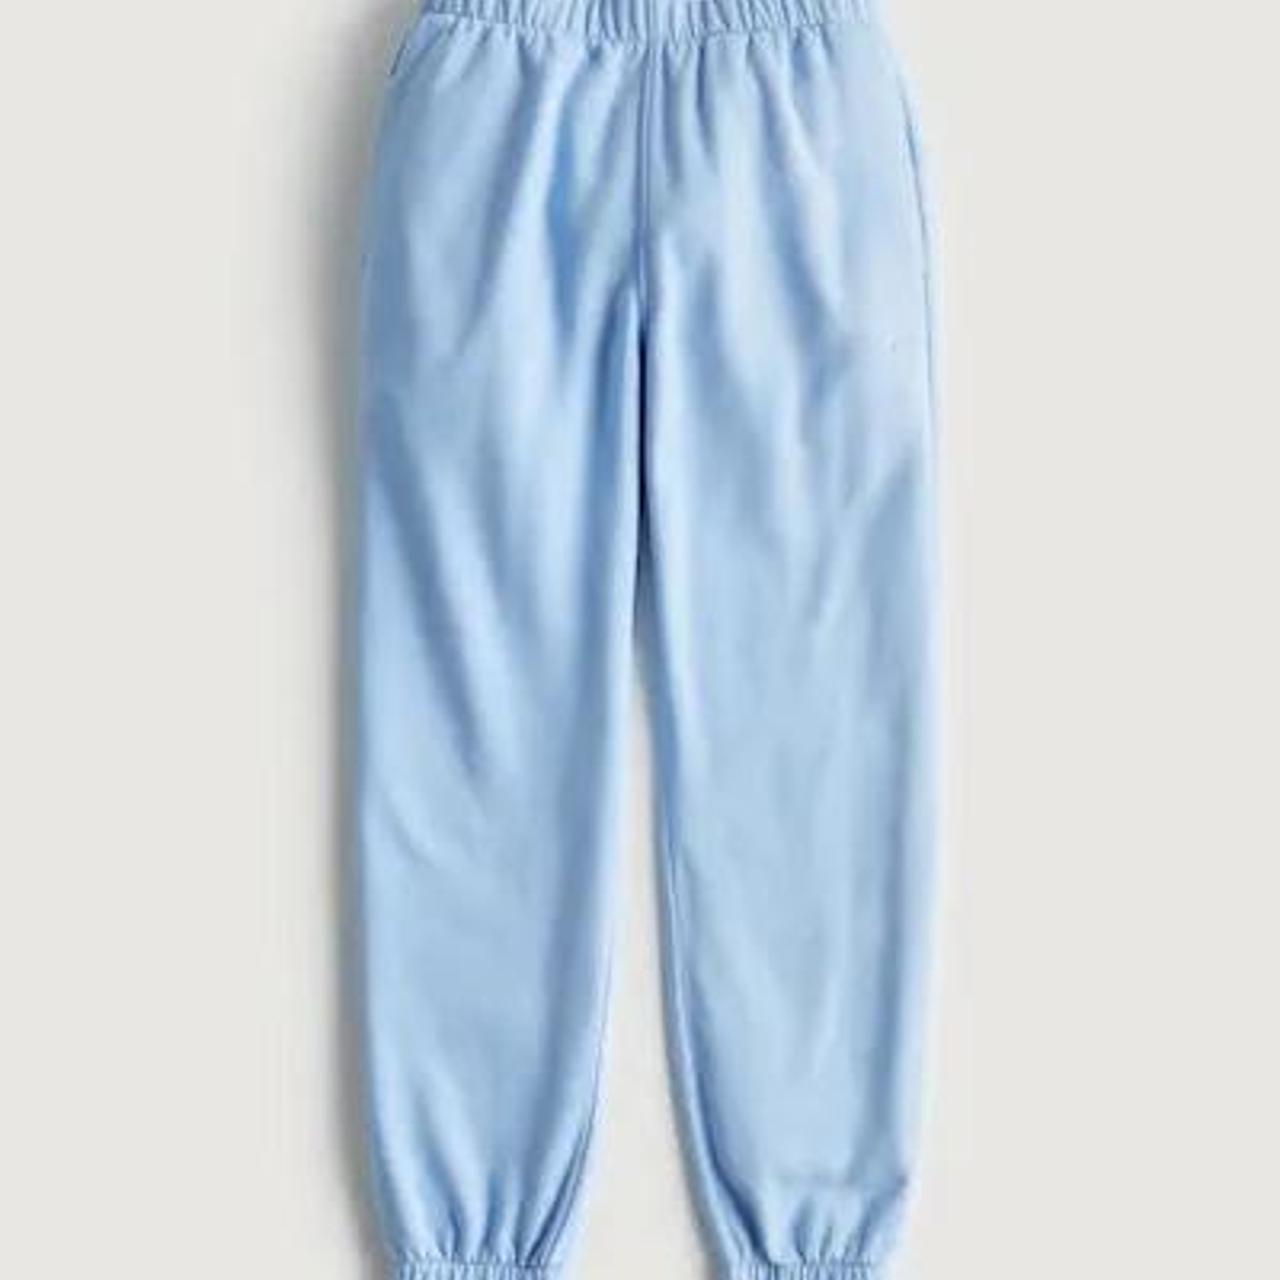 Hollister Co. light blue comfy sweat pants. size xs.